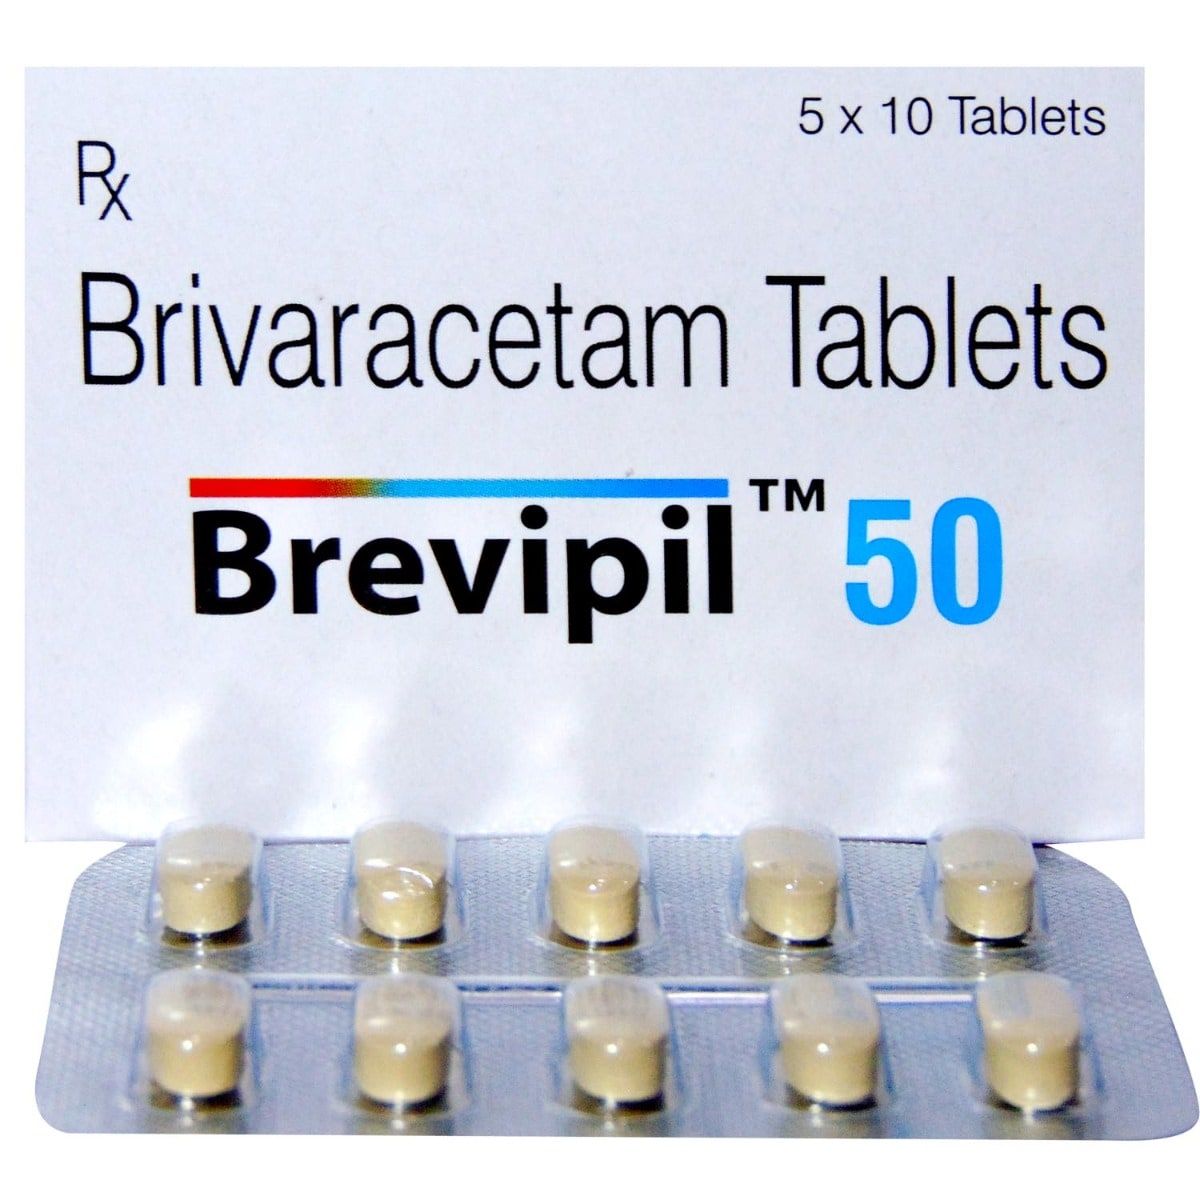 Brevipil 50 Tablet 10's, Pack of 10 TABLETS